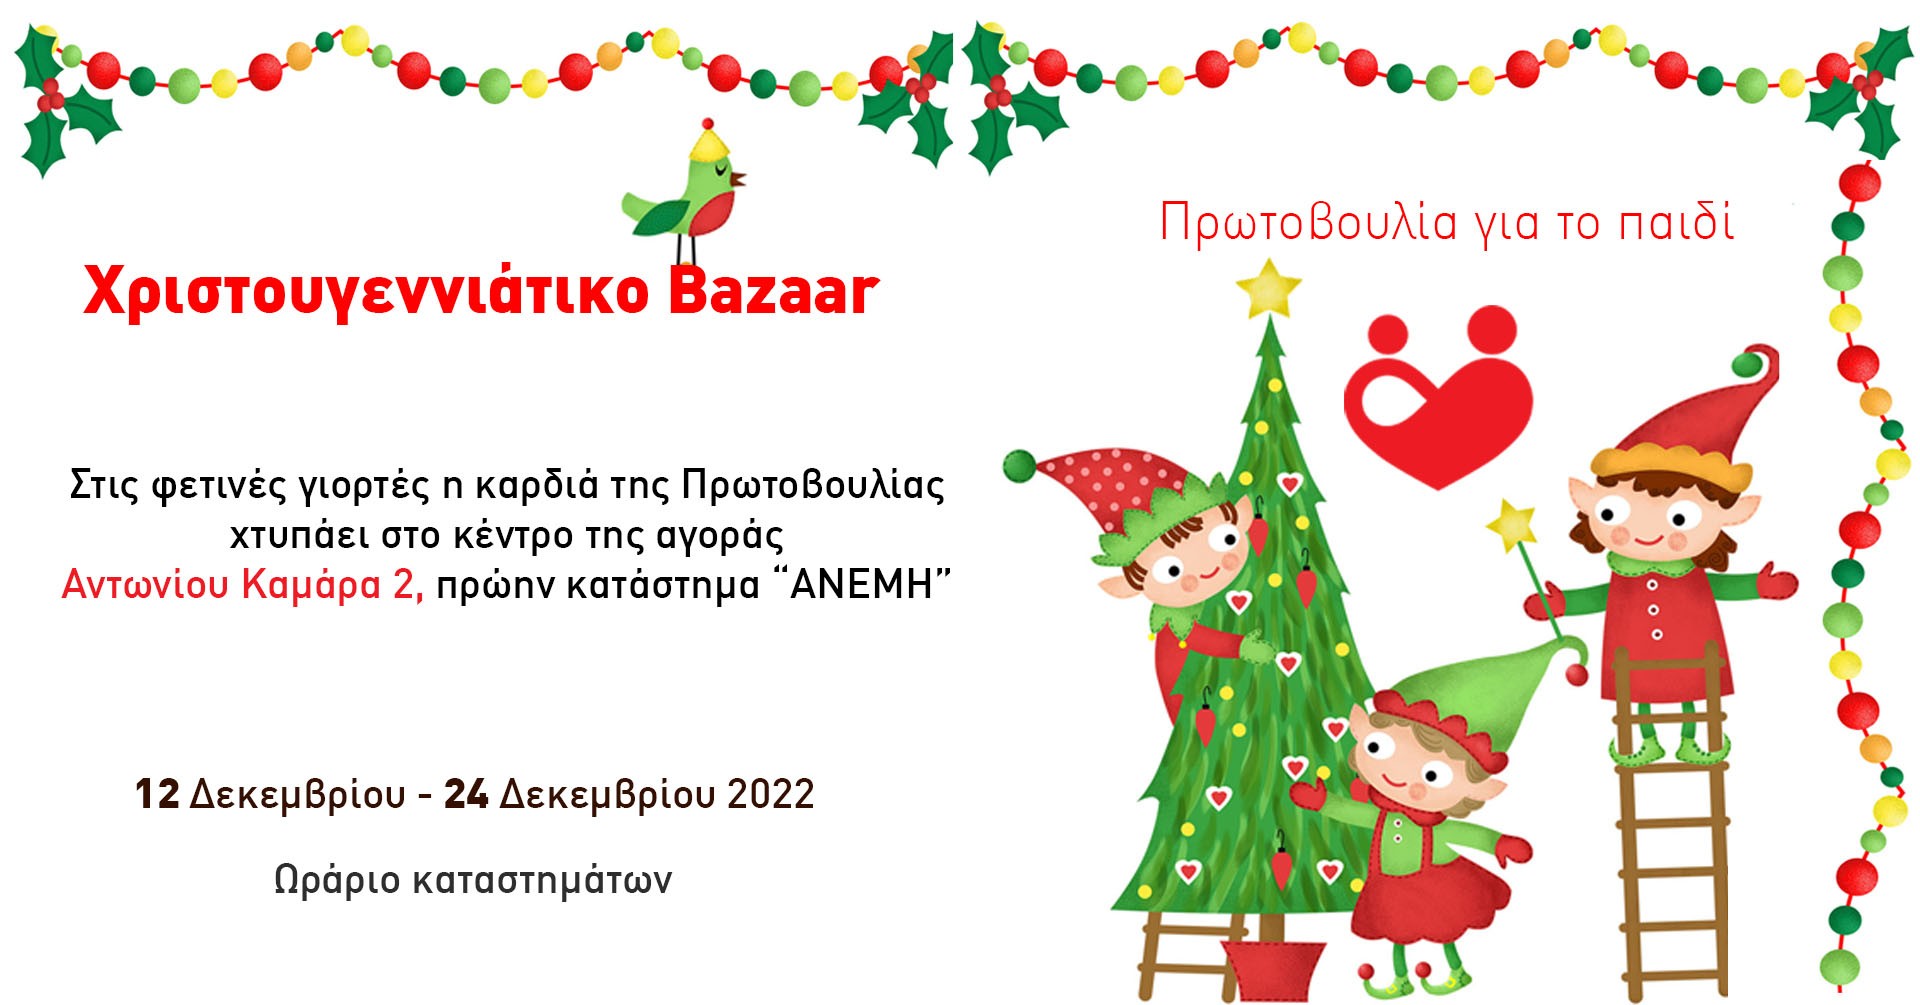 Χριστουγεννιάτικο Bazaar 2022 της Πρωτοβουλίας για το Παιδί